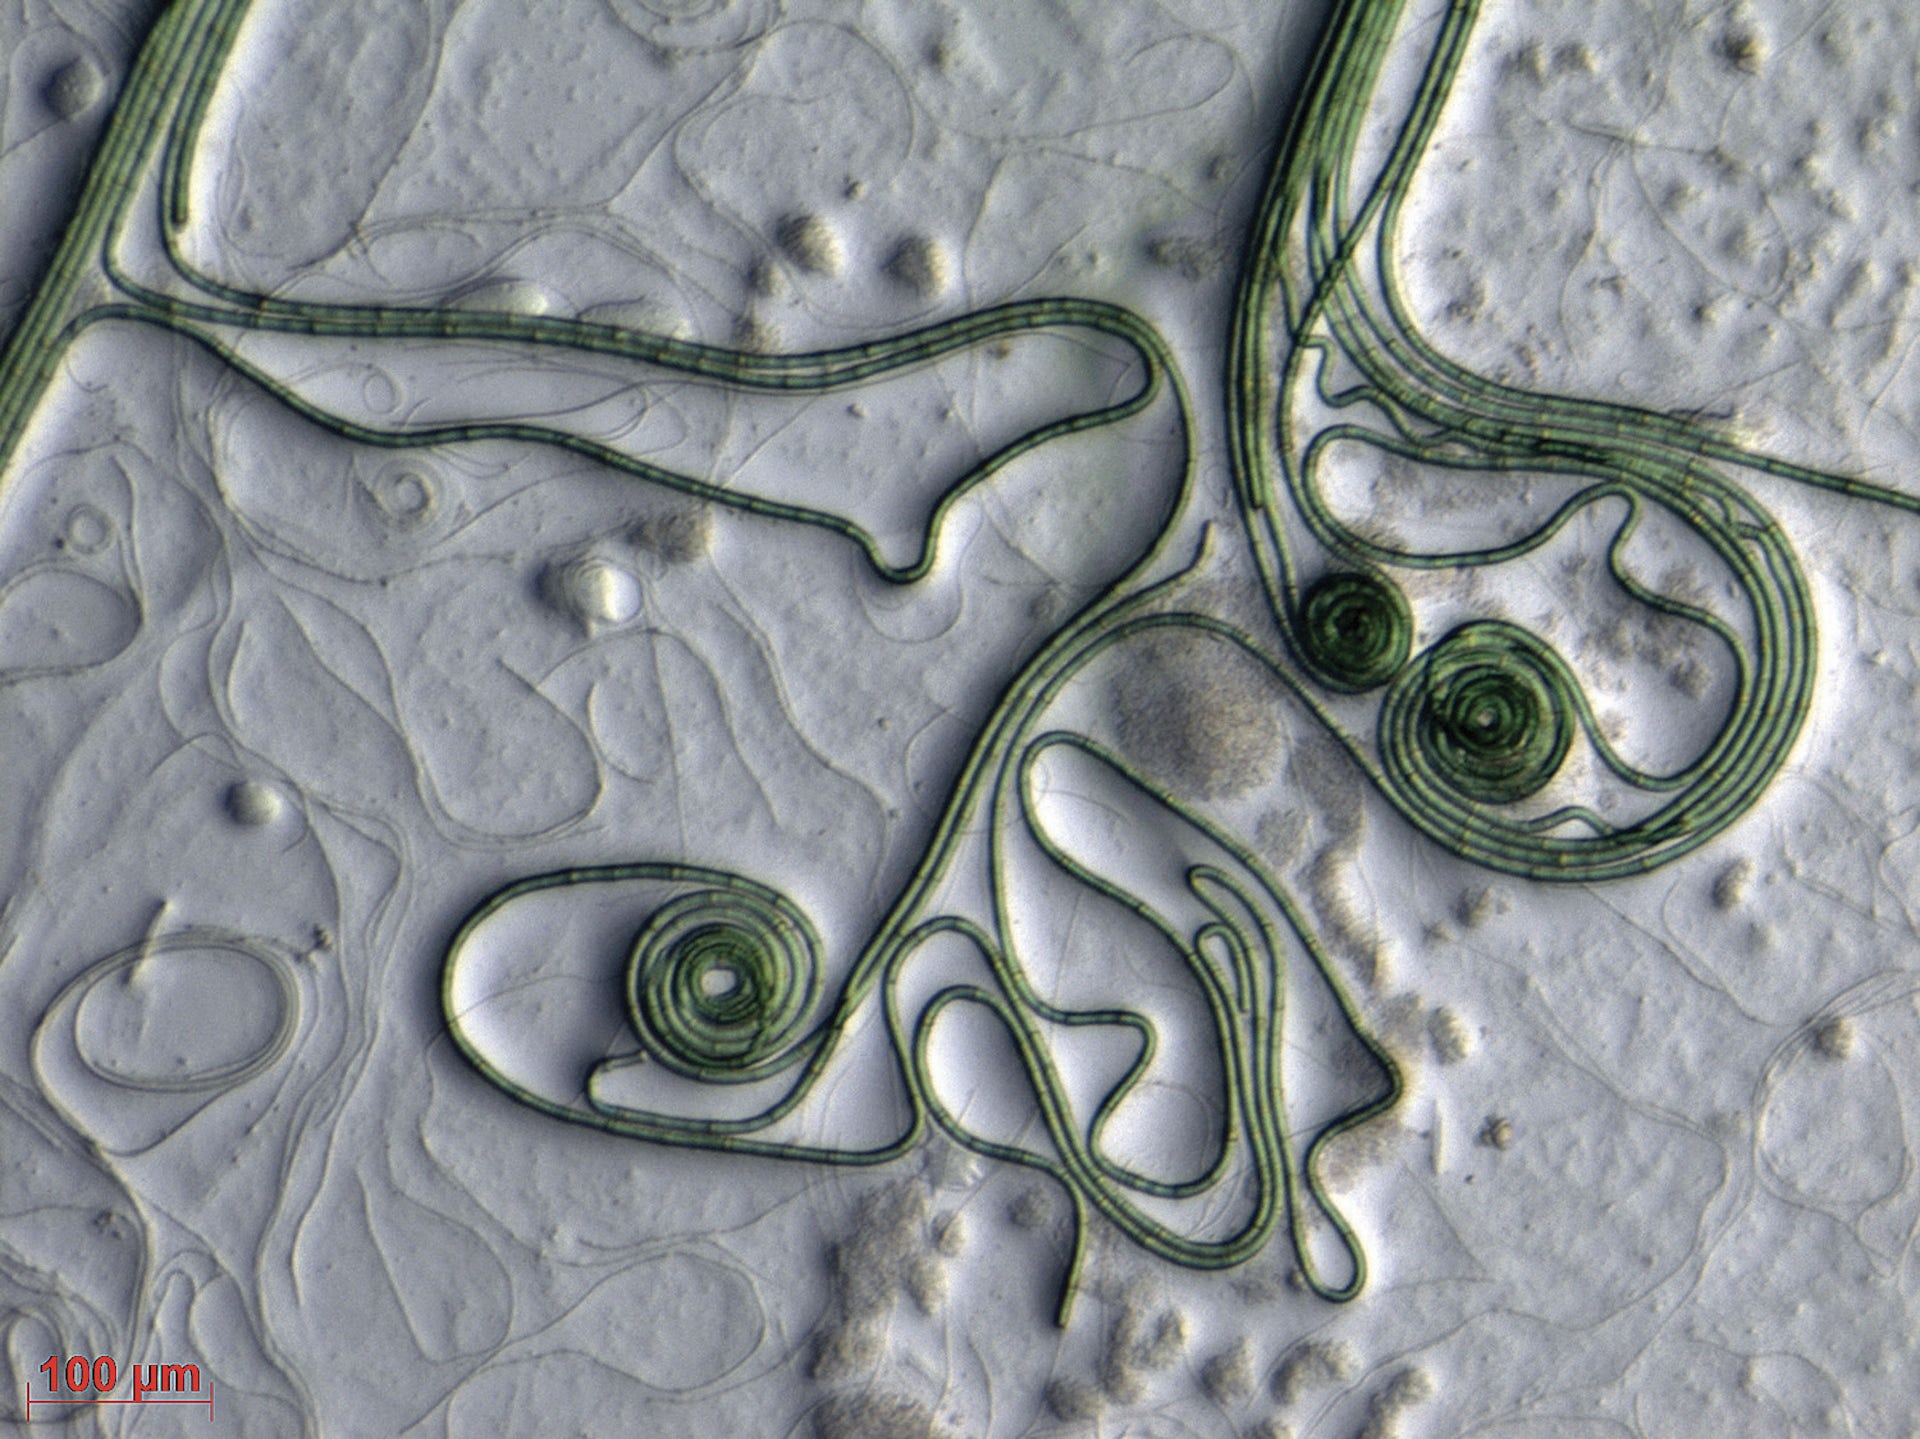 hebras de bacterias parecidas a pelos verdes